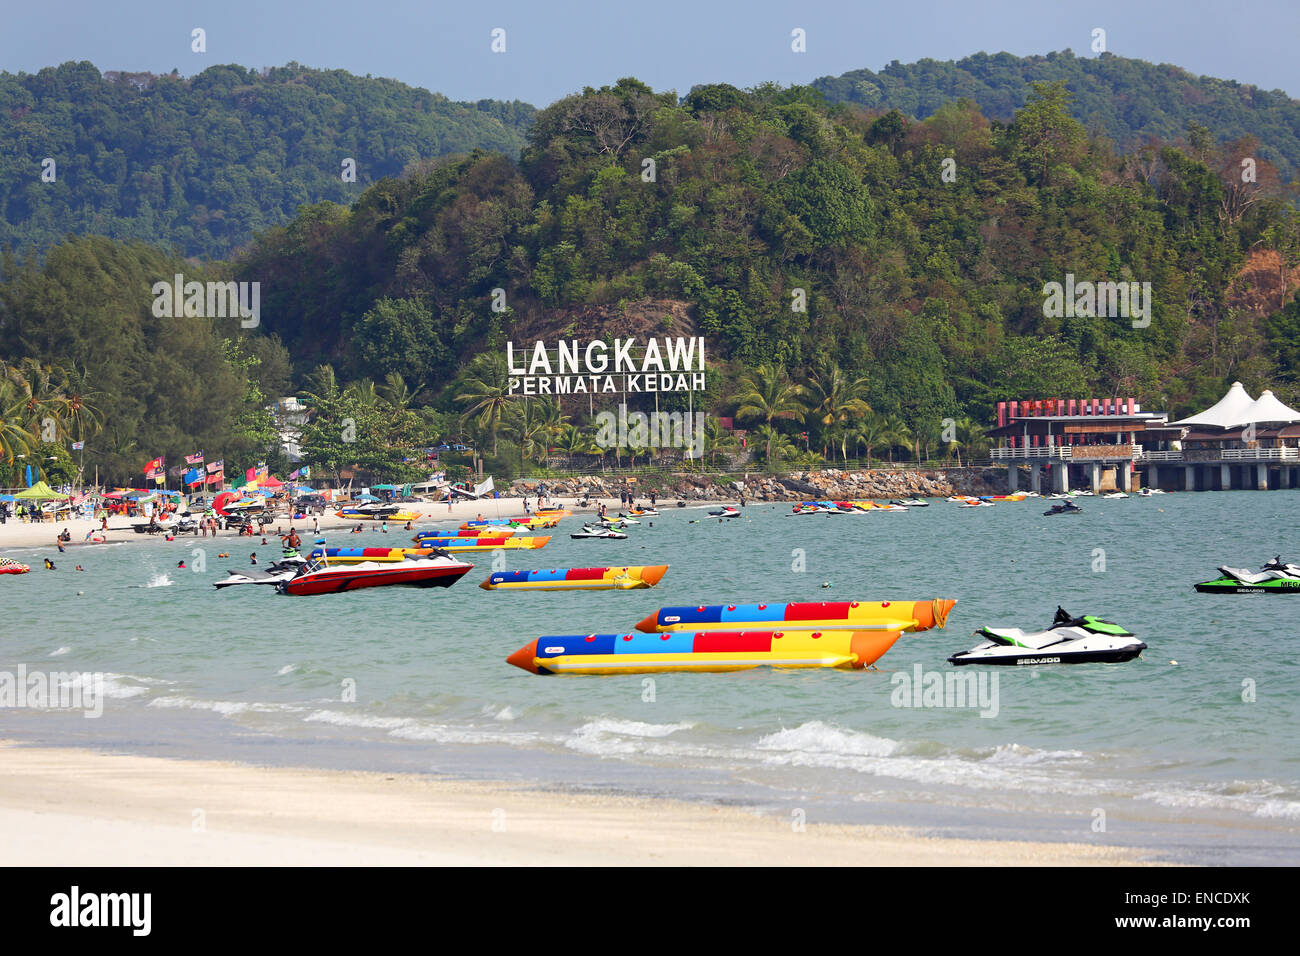 La plage de Pantai Cenang, Langkawi, Malaisie Banque D'Images